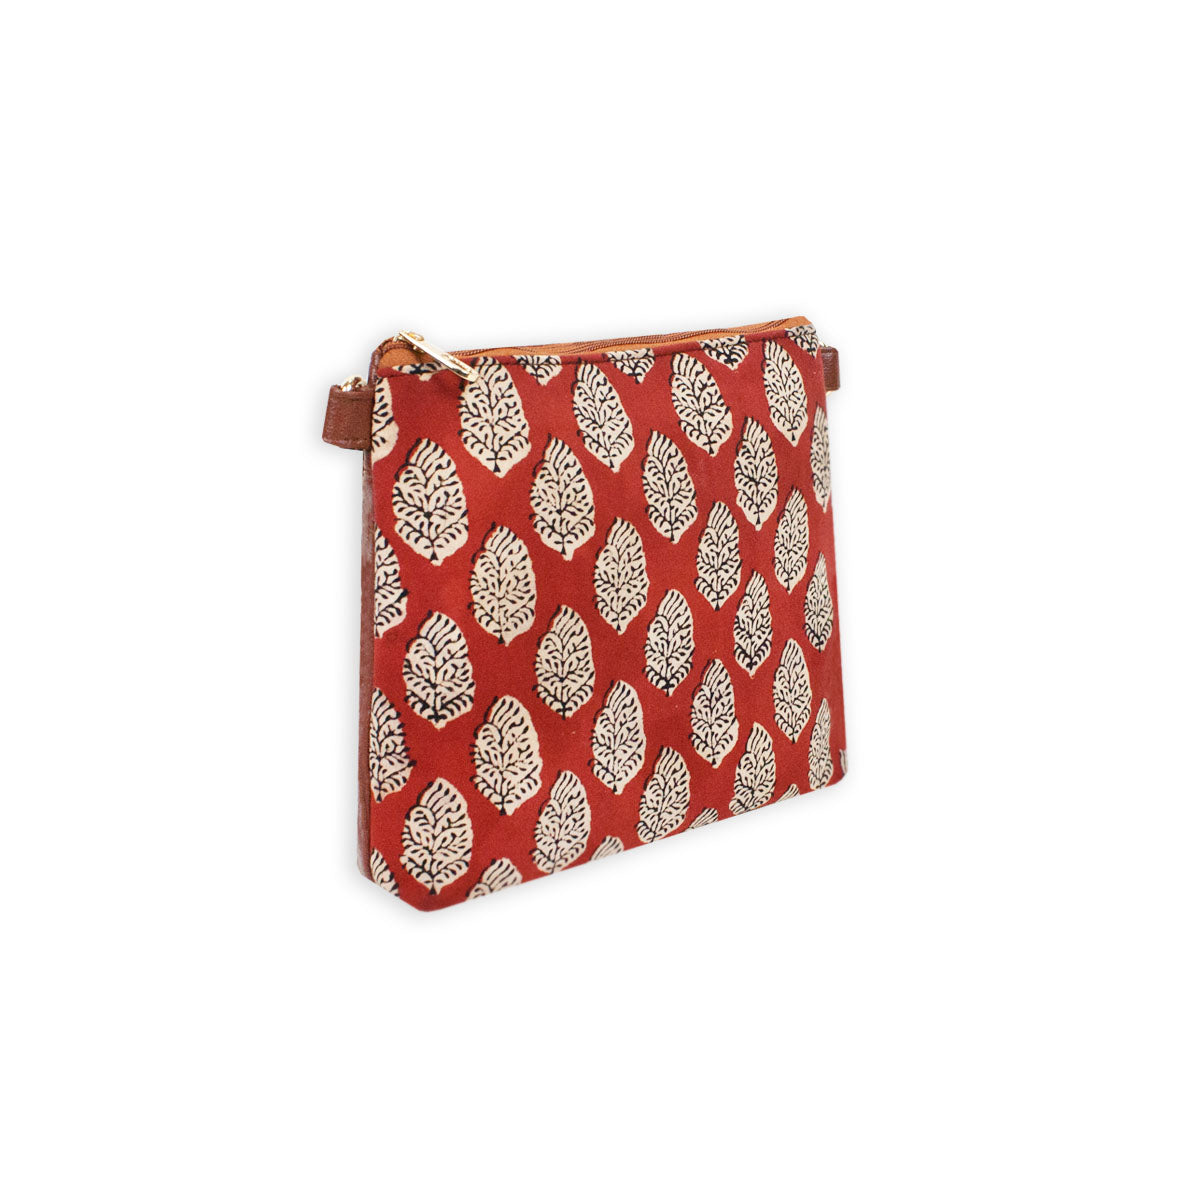 Block-Printed Red Buti Sling Bag